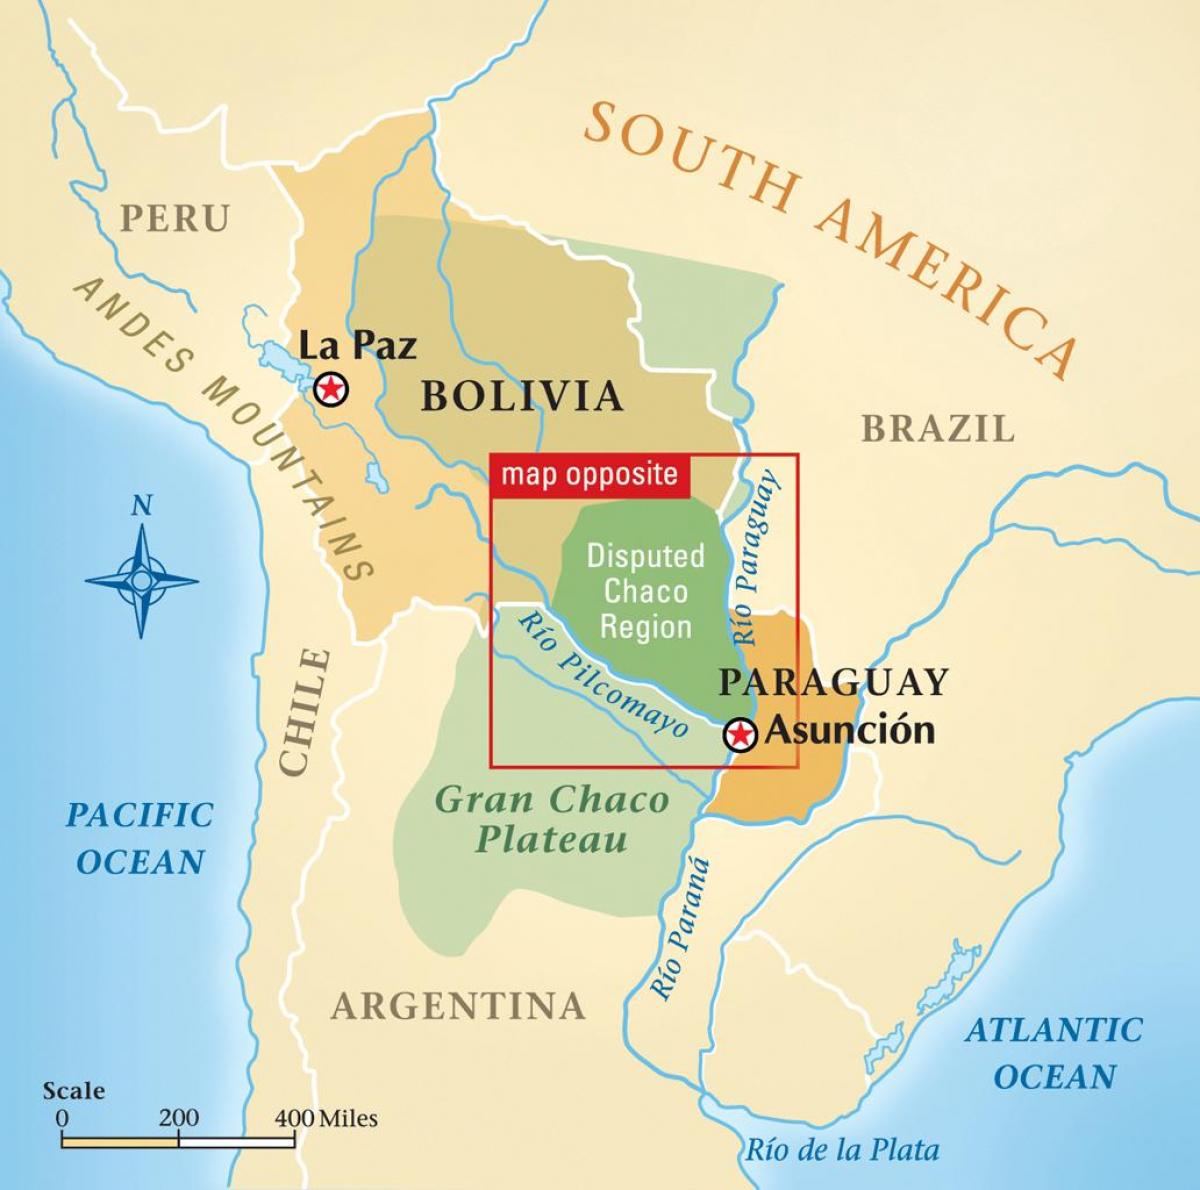 Mapa ng rio Paraguay